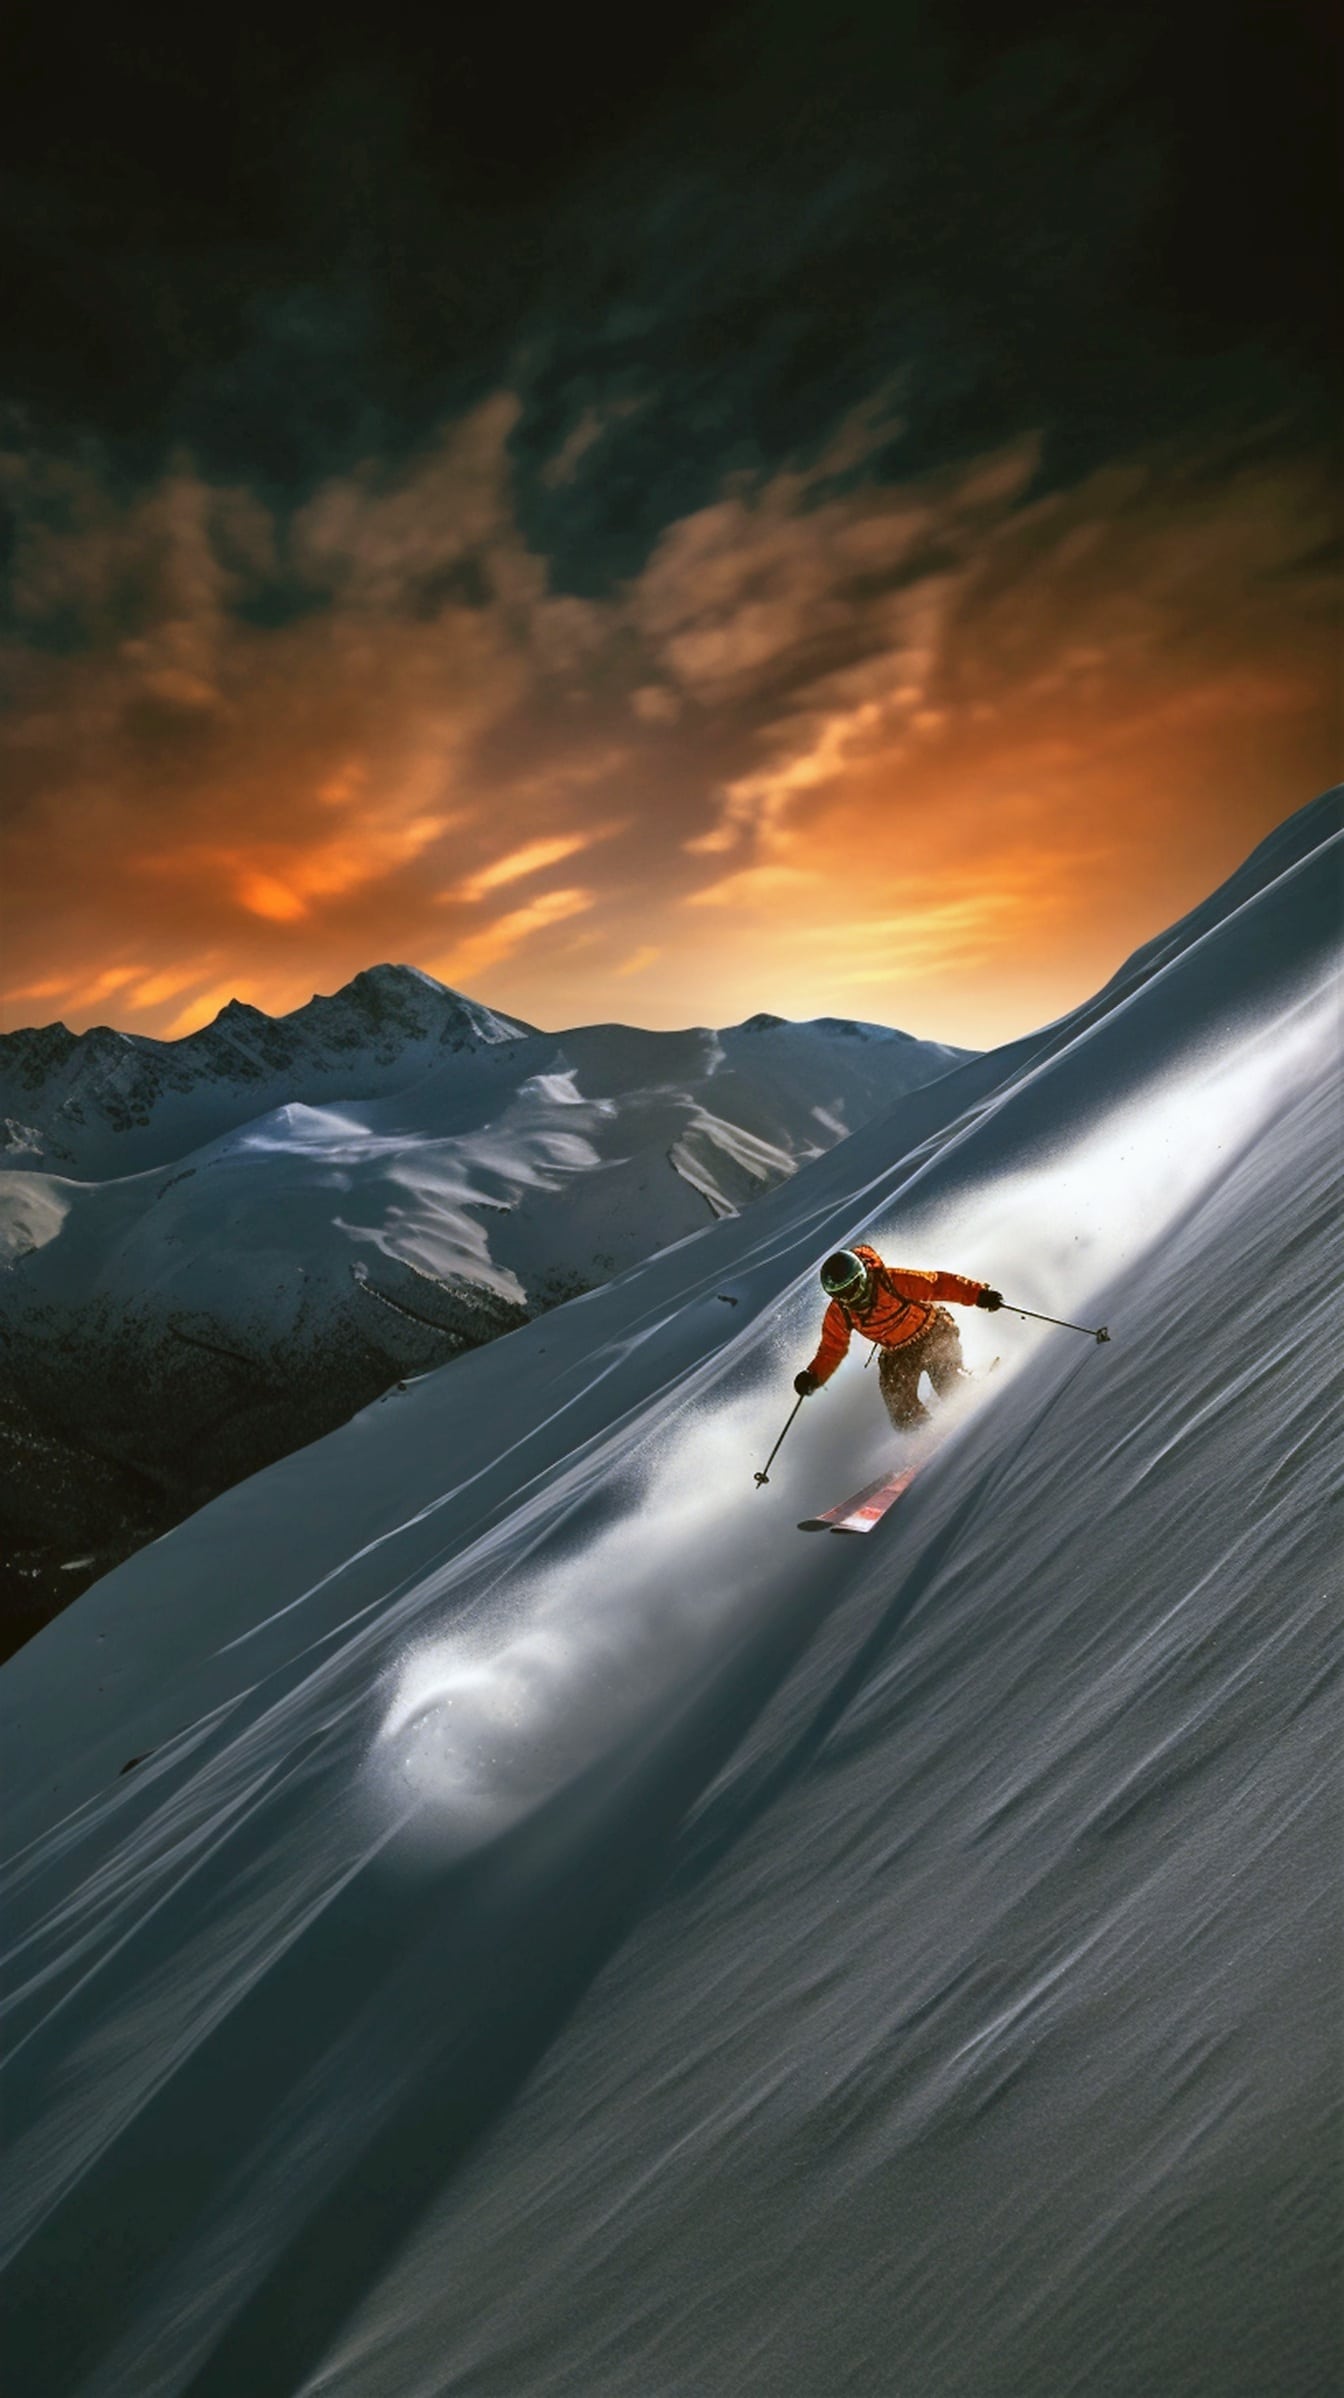 นักเล่นสกีสุดขีดบนเนินหิมะยามพระอาทิตย์ตกดินอันยิ่งใหญ่